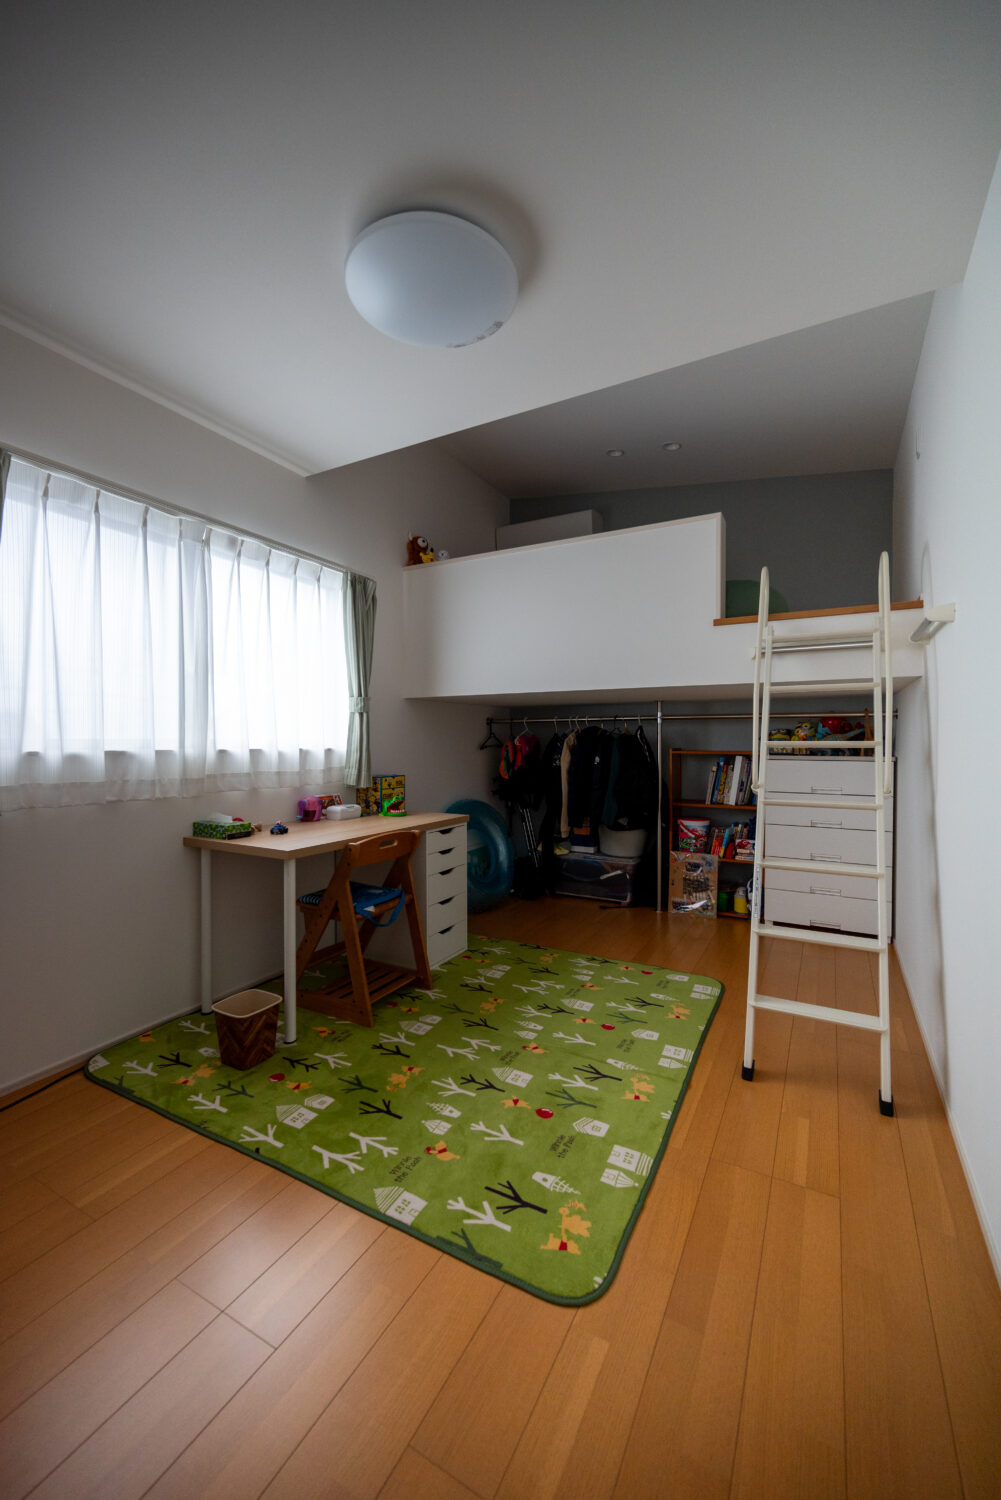 アイデザインホーム
注文住宅
広島県三原市
天井を一部高くして、憧れのロフトを実現した子ども部屋。ロフトはベッド変わりに、ロフトの下は収納として活用しています。